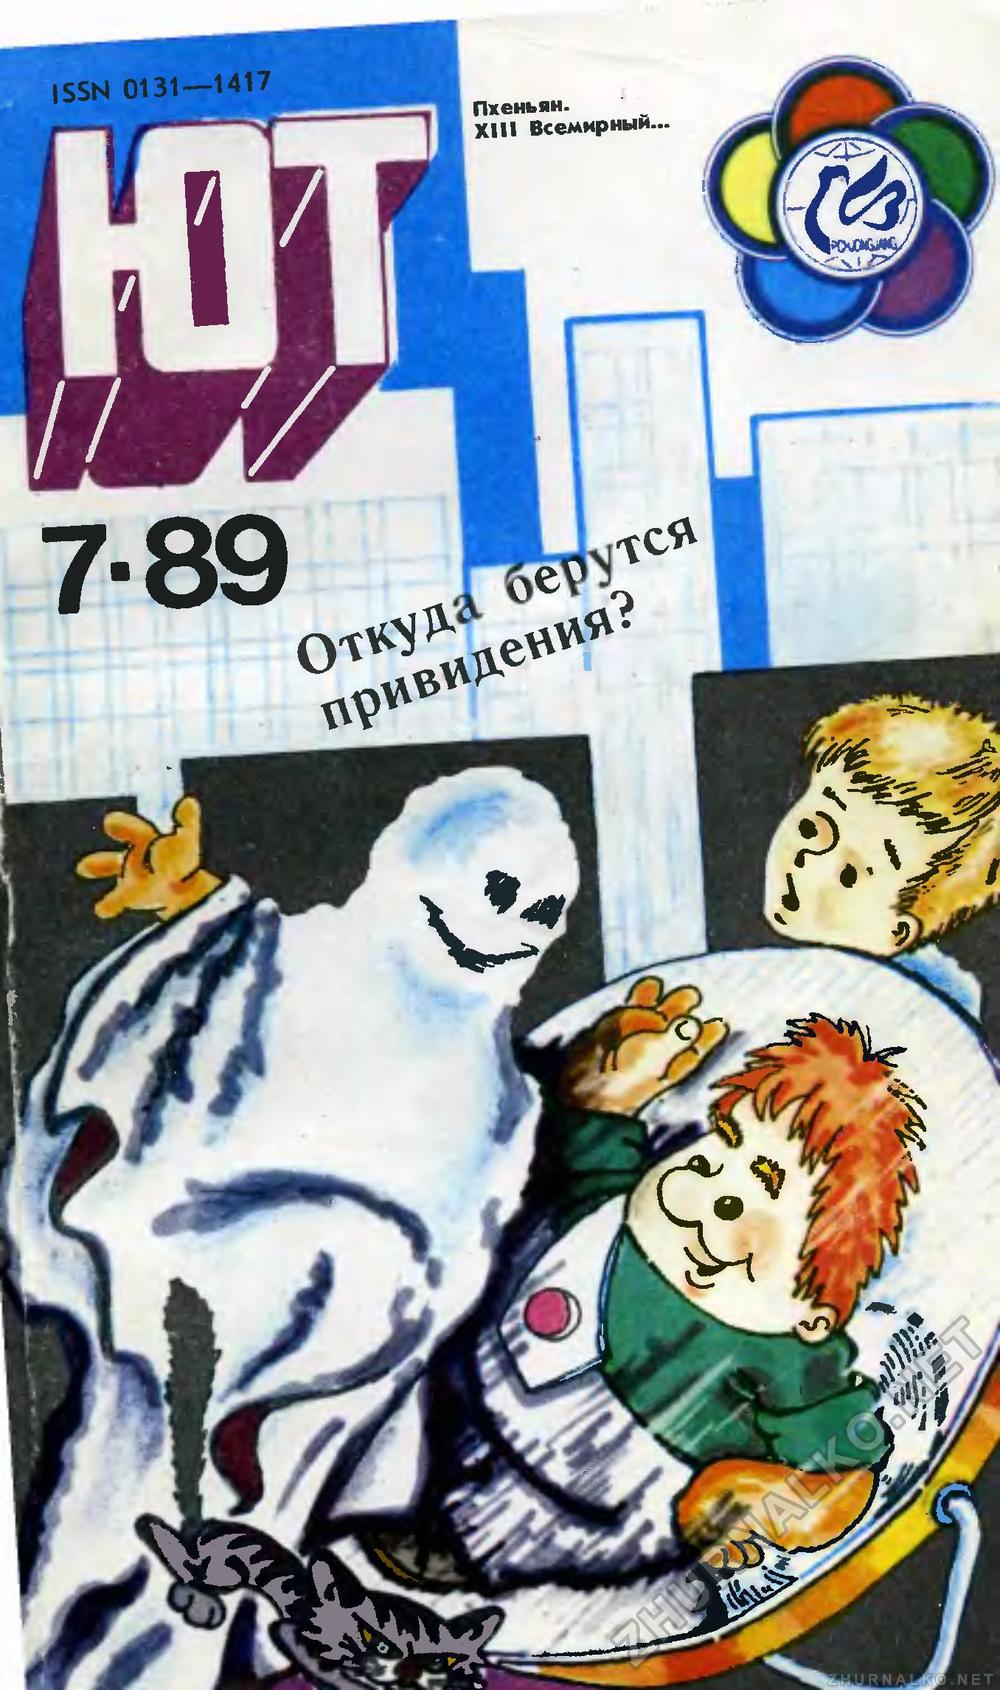   1989-07,  1